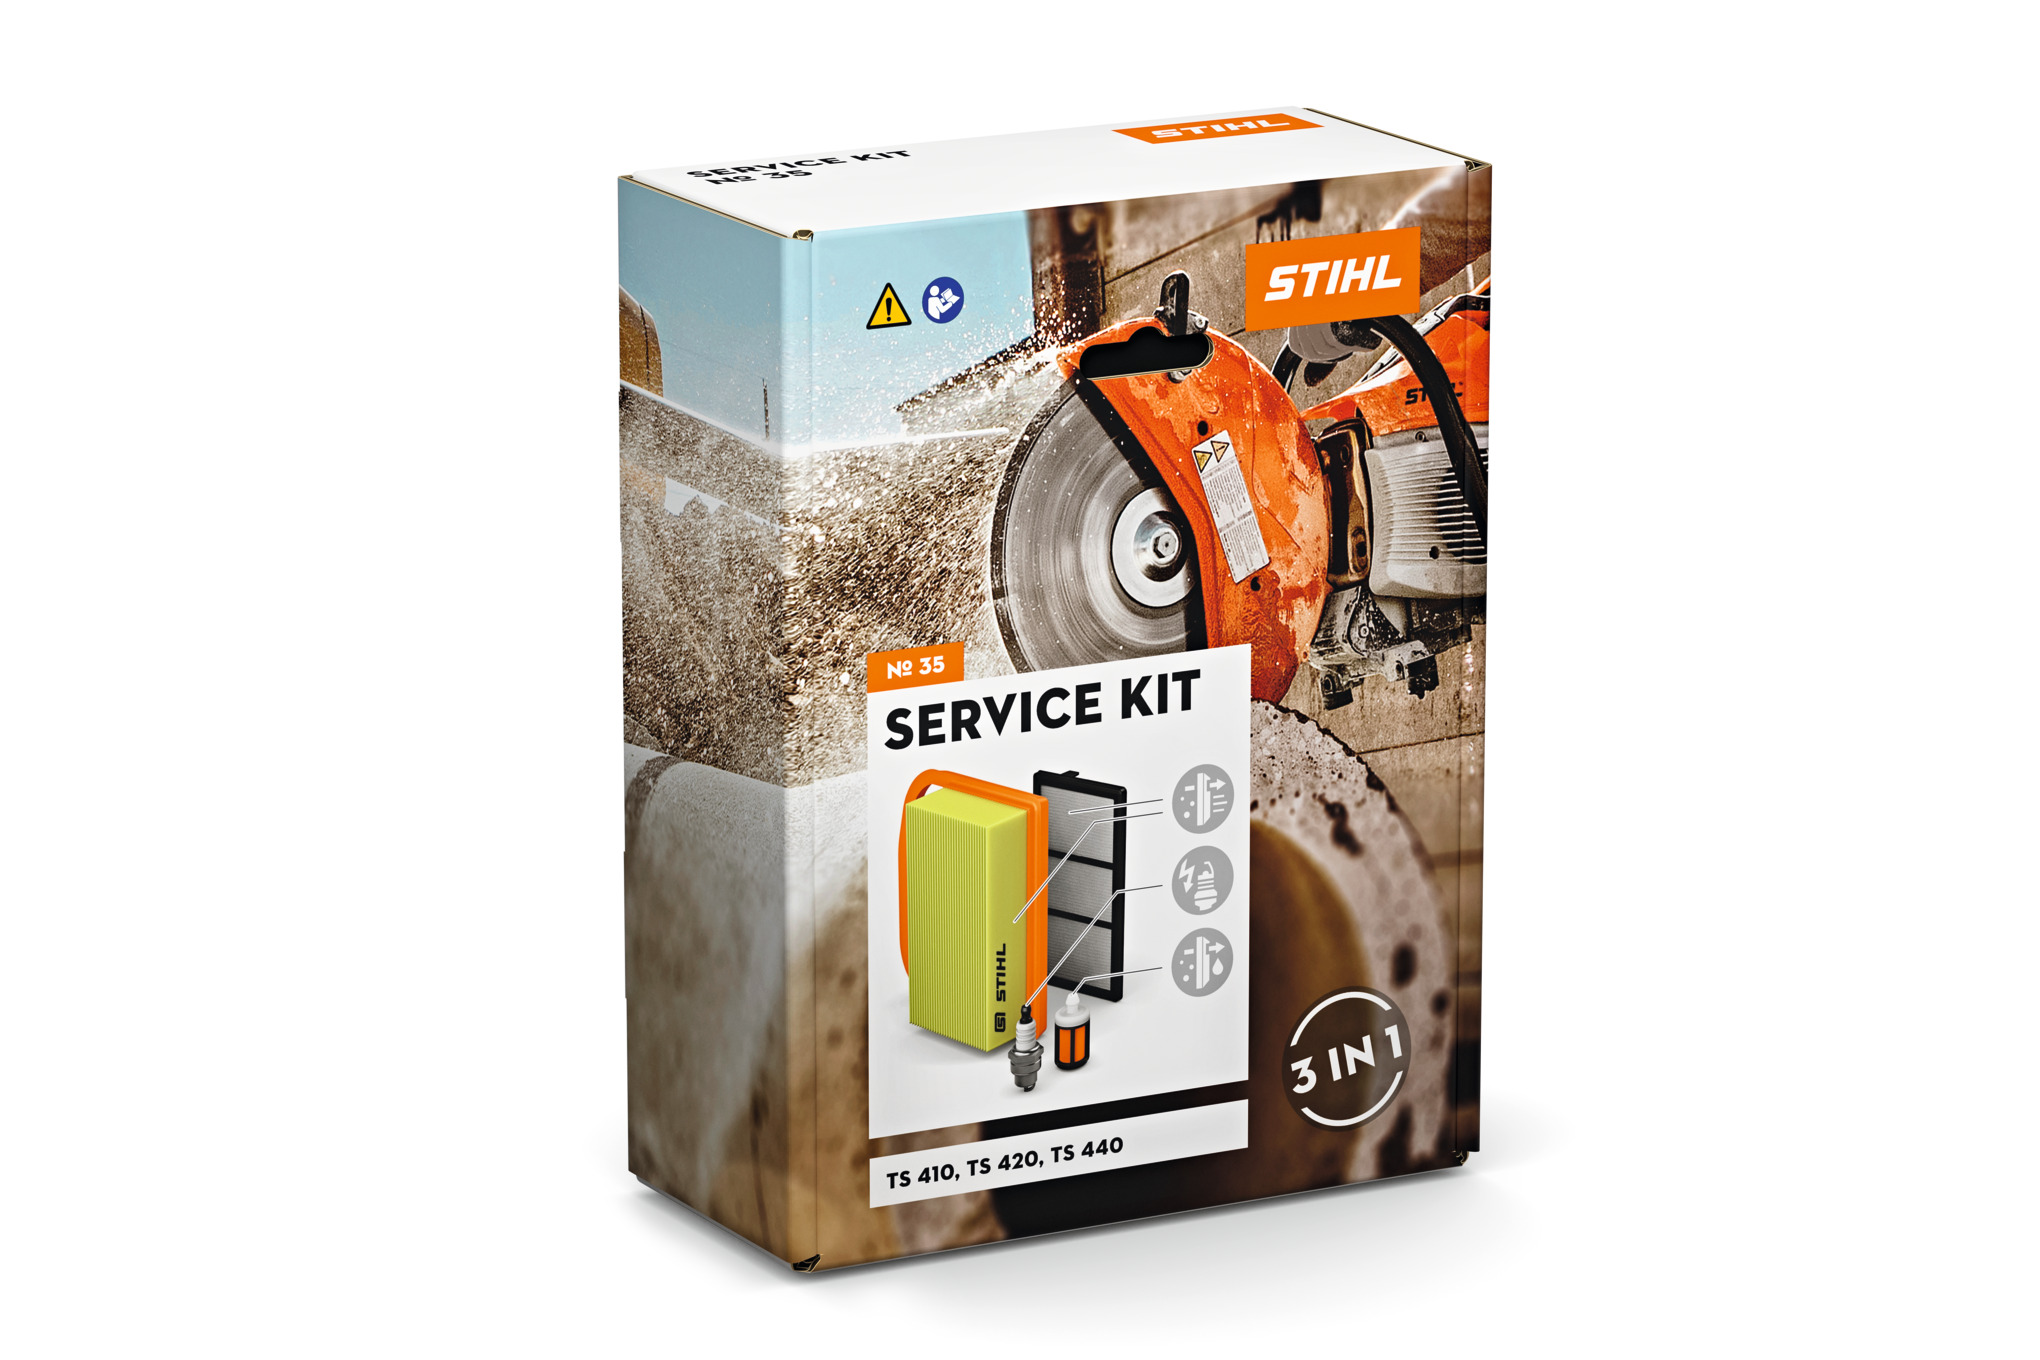 Service Kit für TS 410, 420